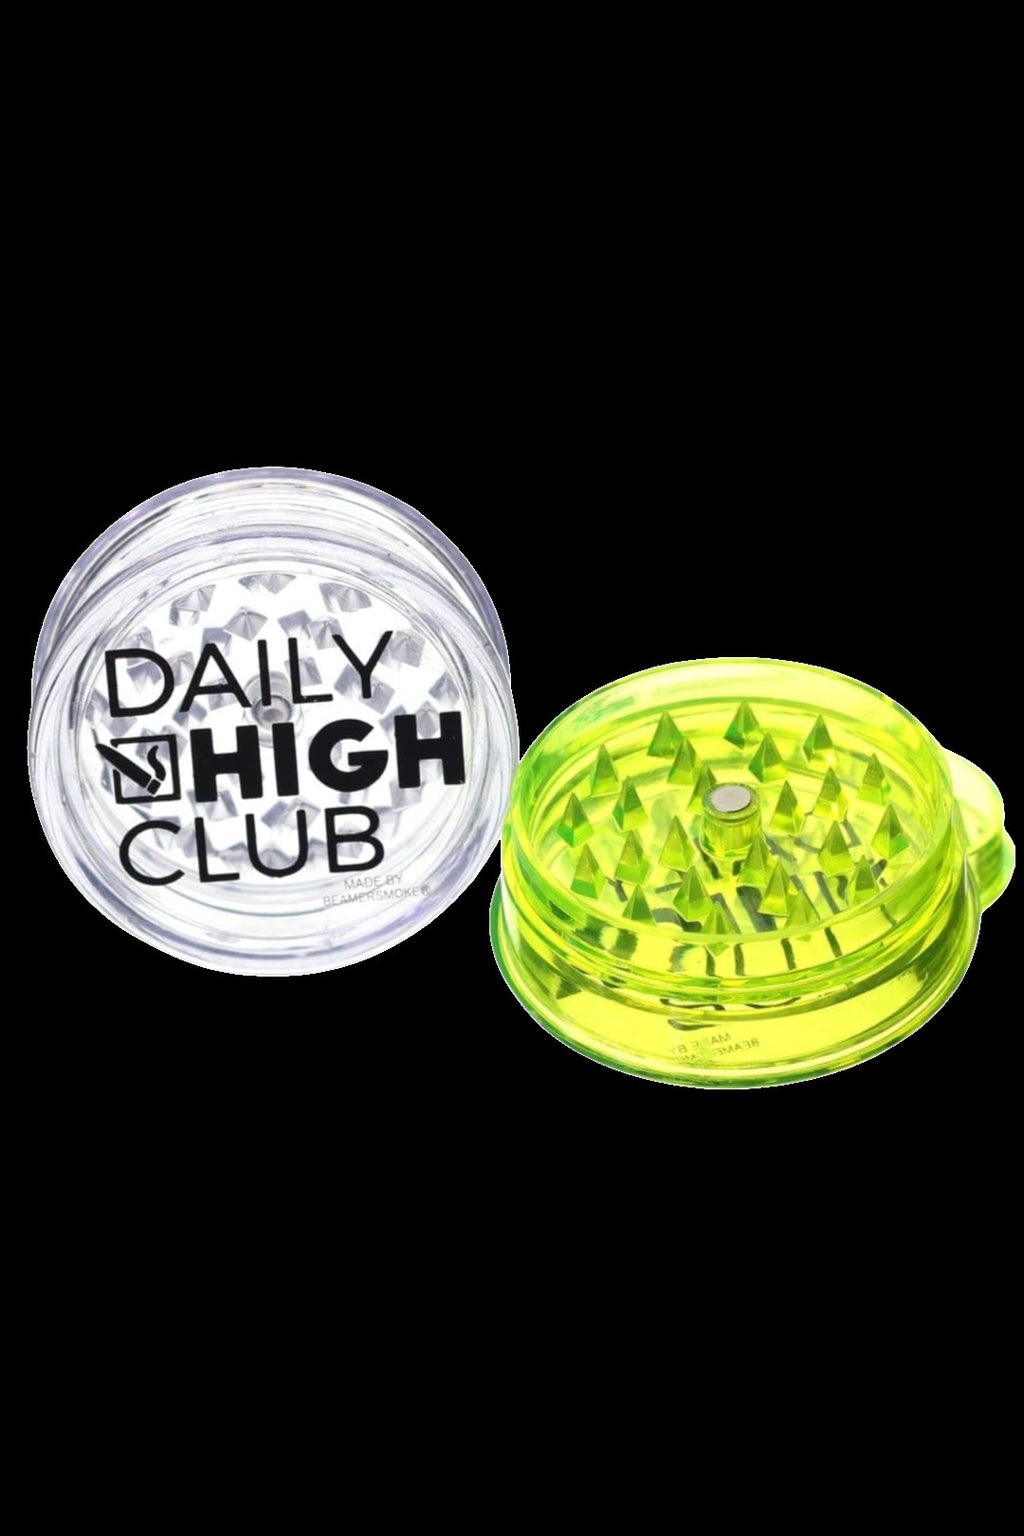 3 Inch, 2-Piece Walnut Grinder - Daily High Club